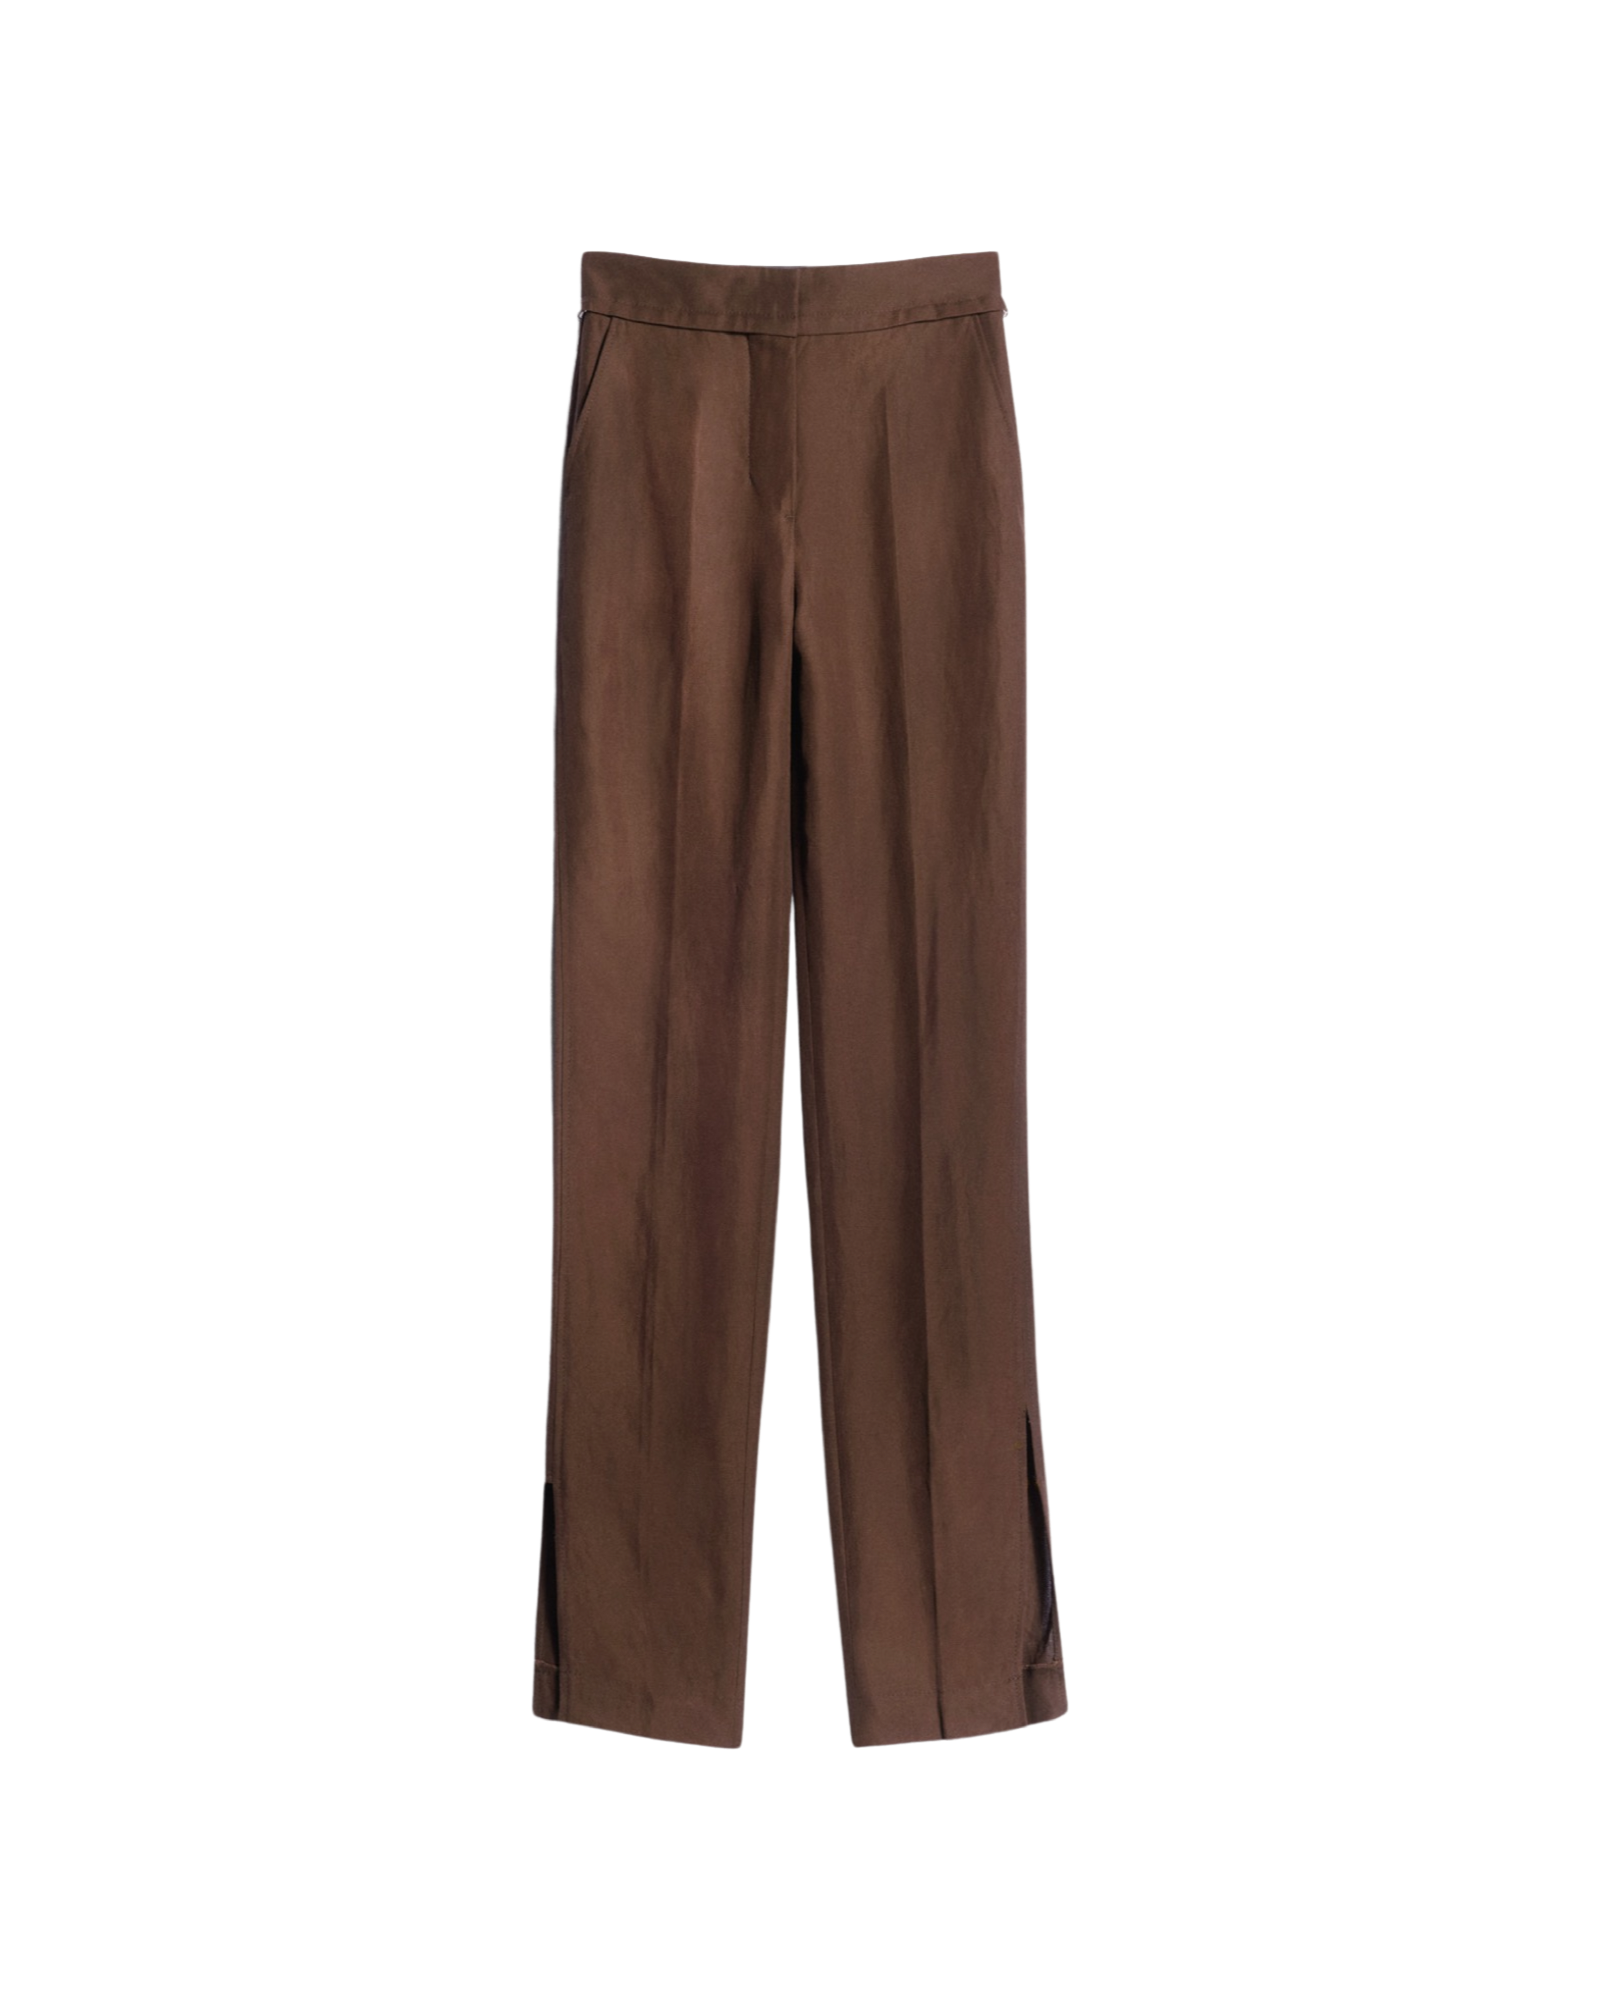 Le Pantalon Tibau high-rise tapered pants